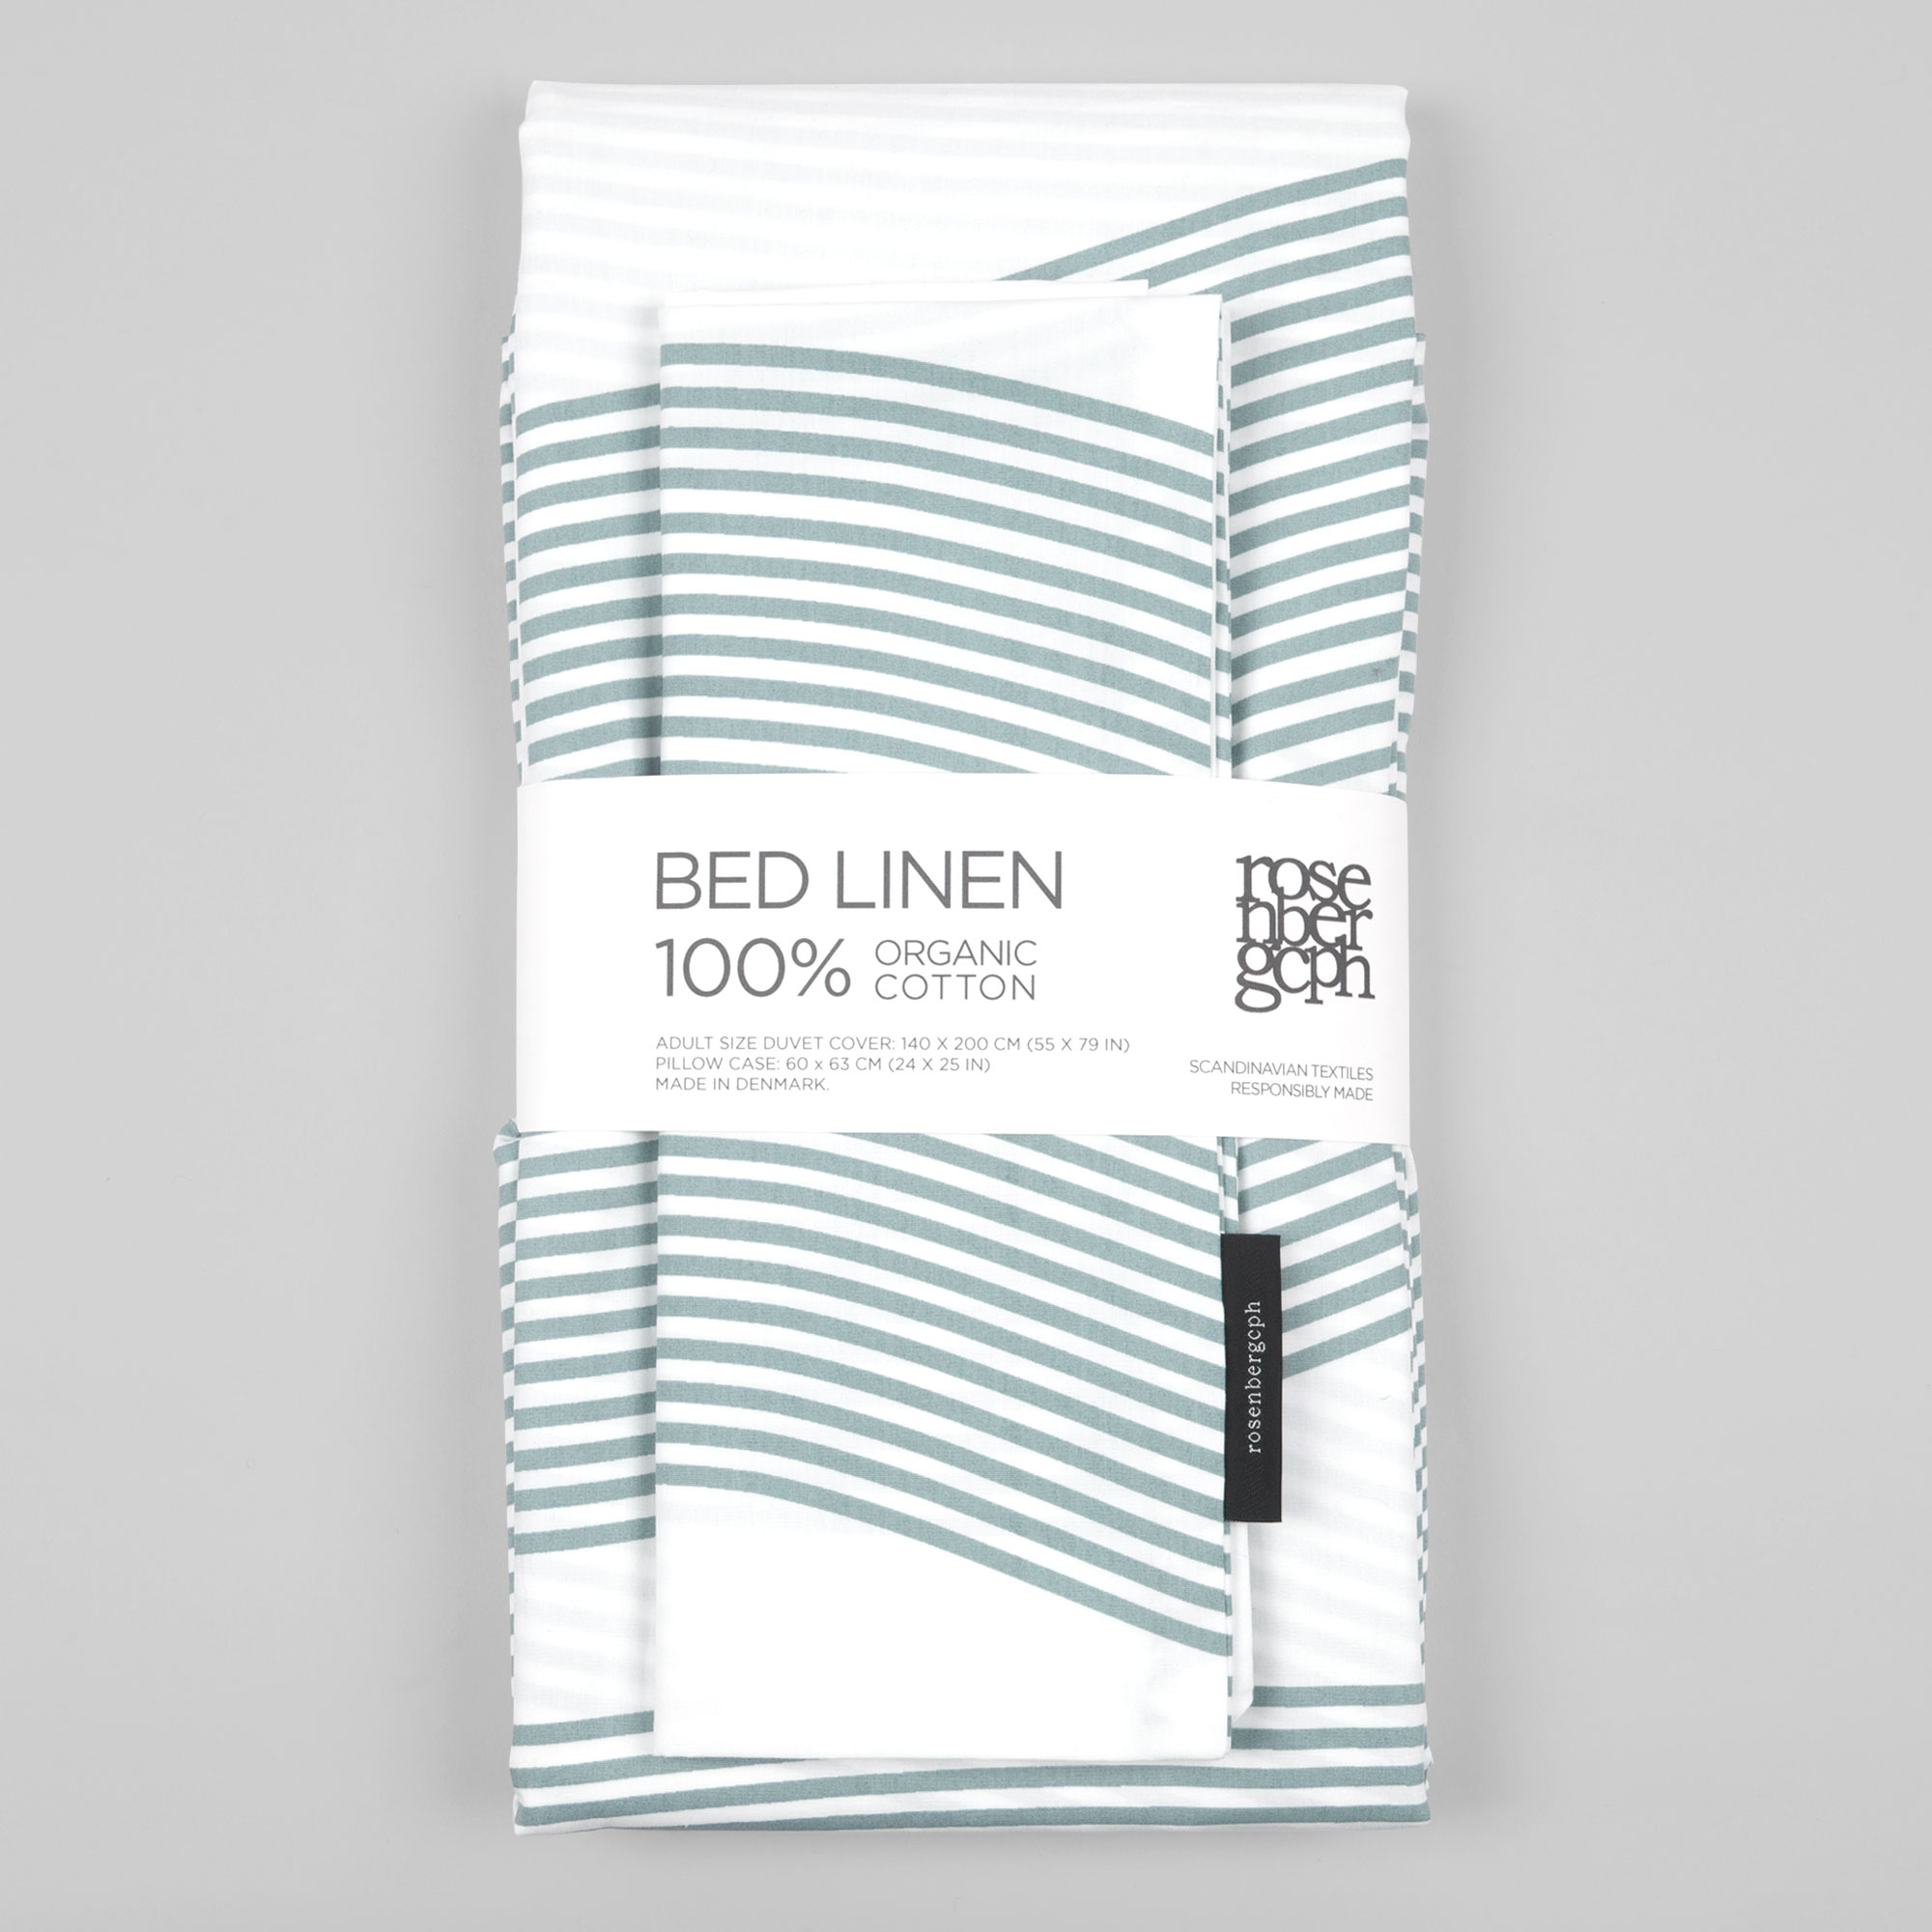 Bed linen, River aqua green, design by Anne Rosenberg, RosenbergCph